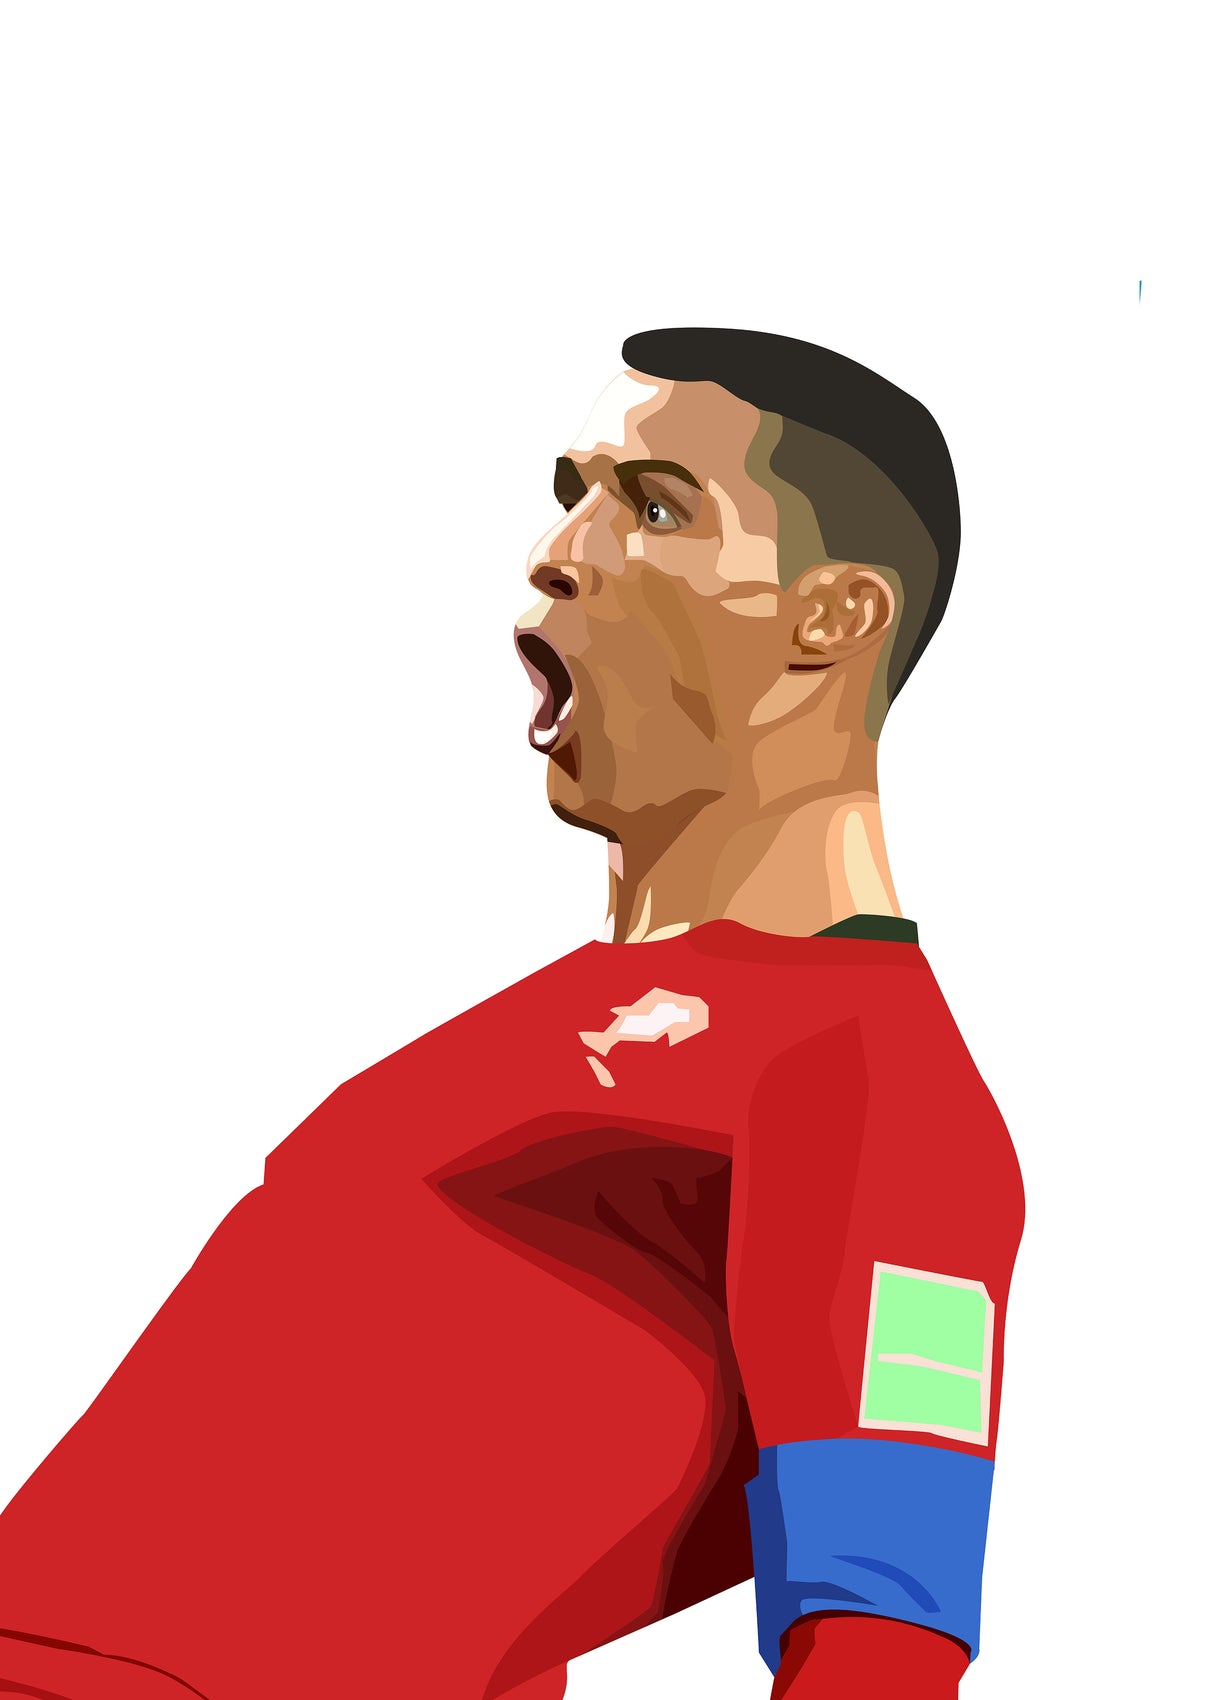 Ronaldo poster